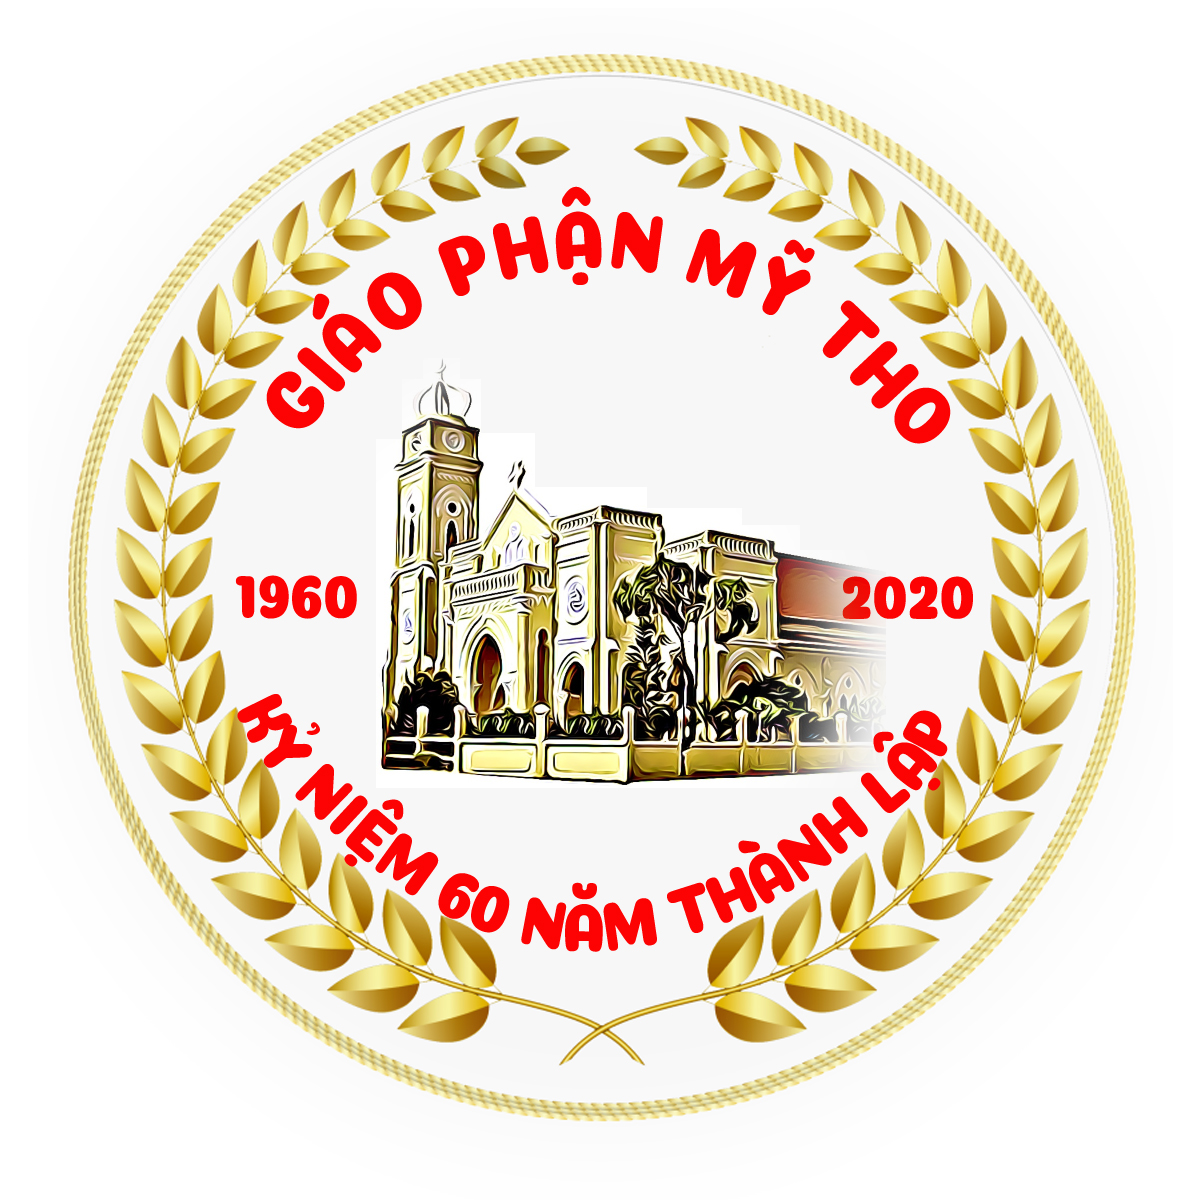 60 năm: Thành Lập Hàng Giáo Phẩm Việt Nam, 60 năm Thành Lập Giáo Phận Mỹ Tho